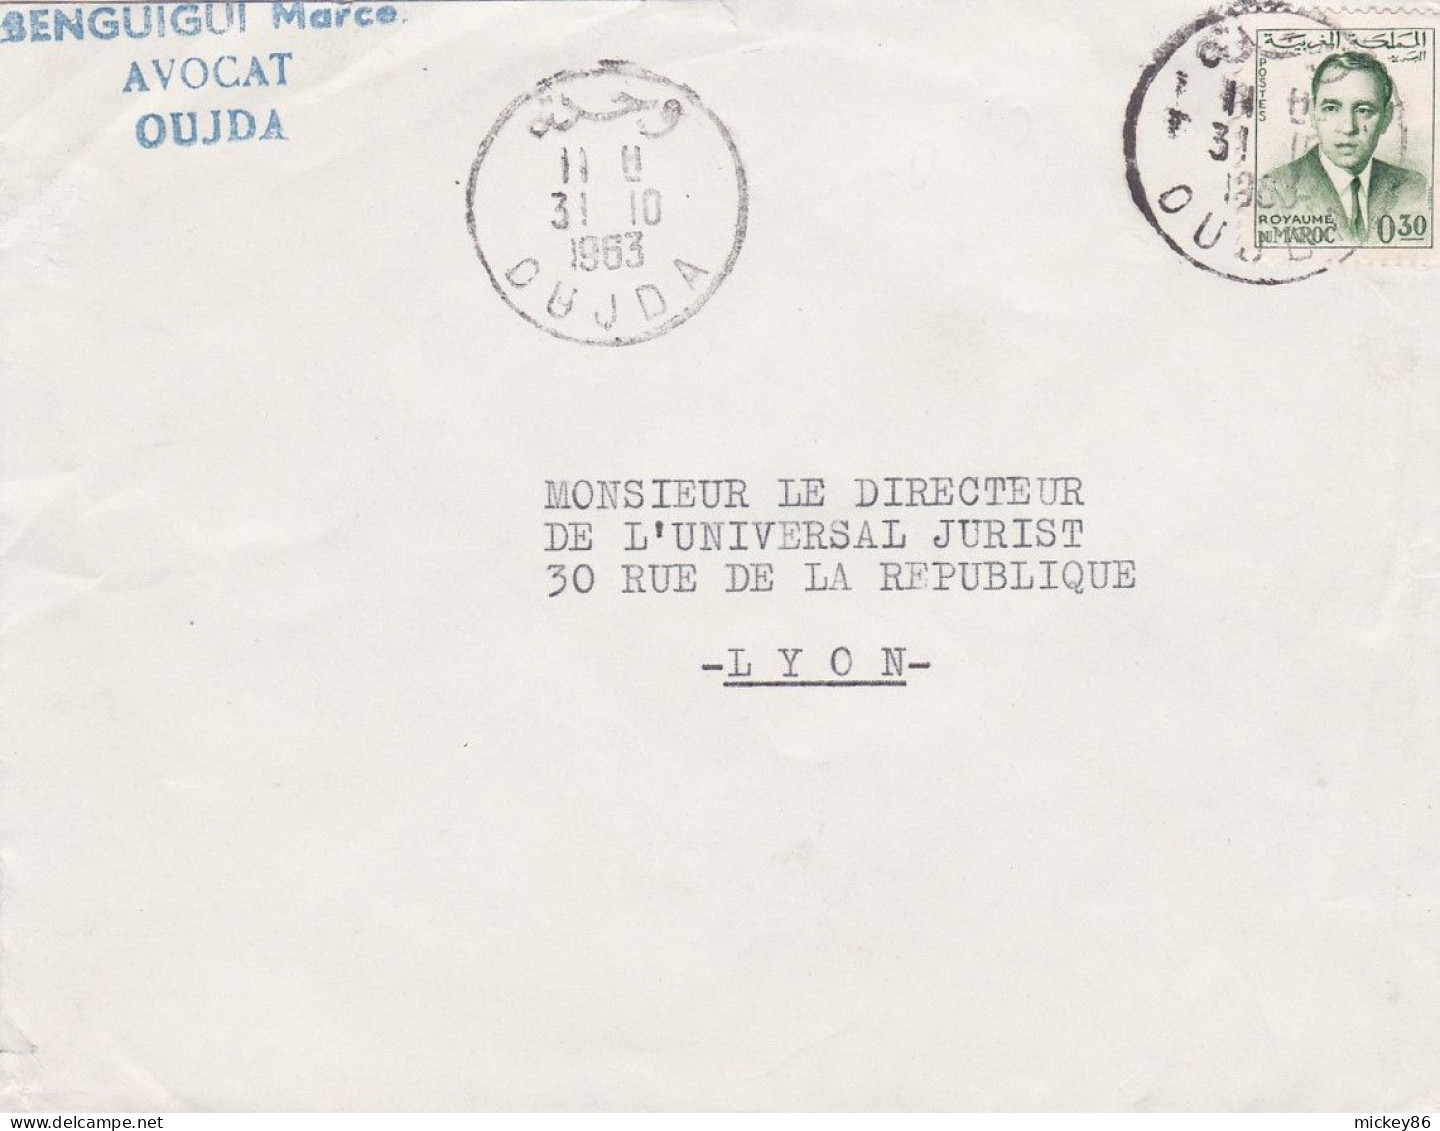 Maroc -1963--Lettre De OUJDA  Pour LYON-69 (France) .timbre Seul Sur Lettre...Beau Cachet...personnalisée BENGUIGUI - Marokko (1956-...)